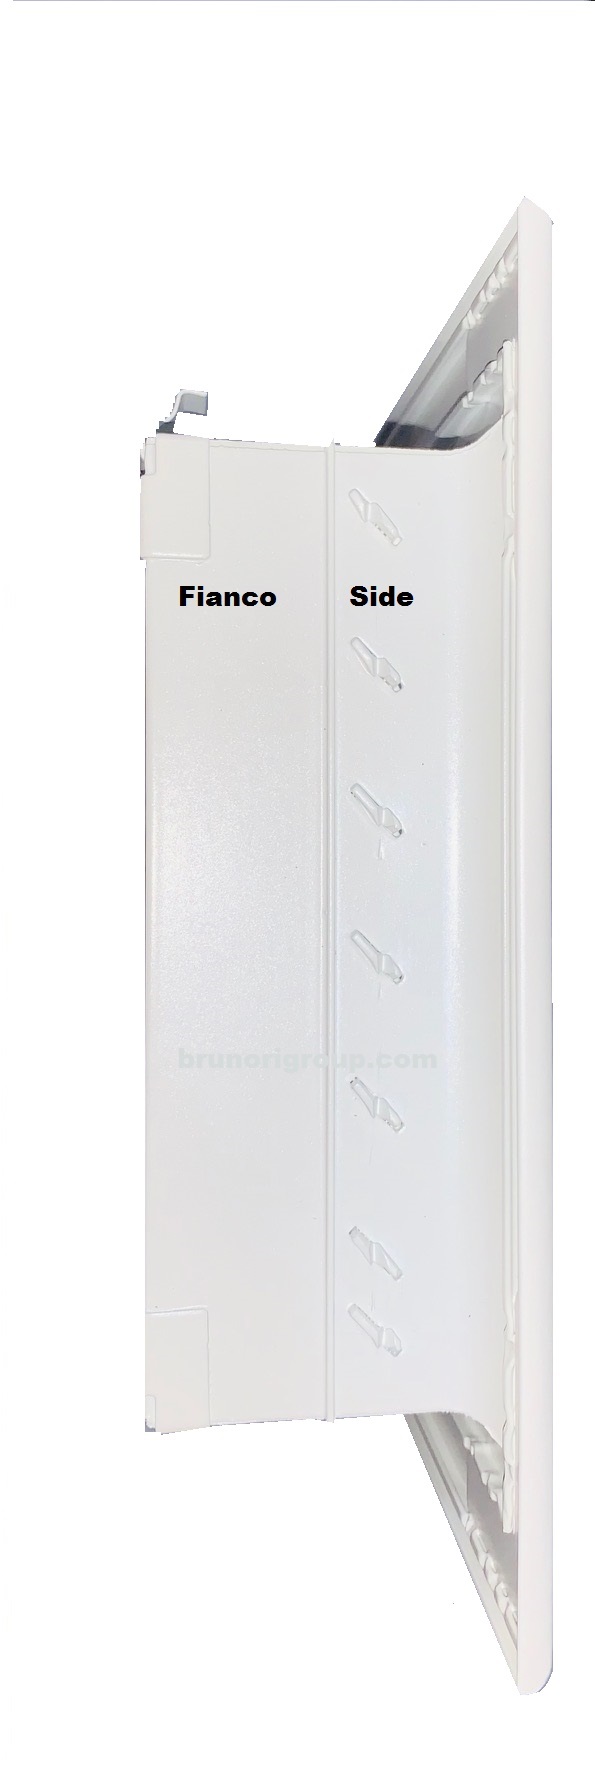 Griglia bocchetta ripresa alluminio aria calda fredda diffusore 600x150 bianca 